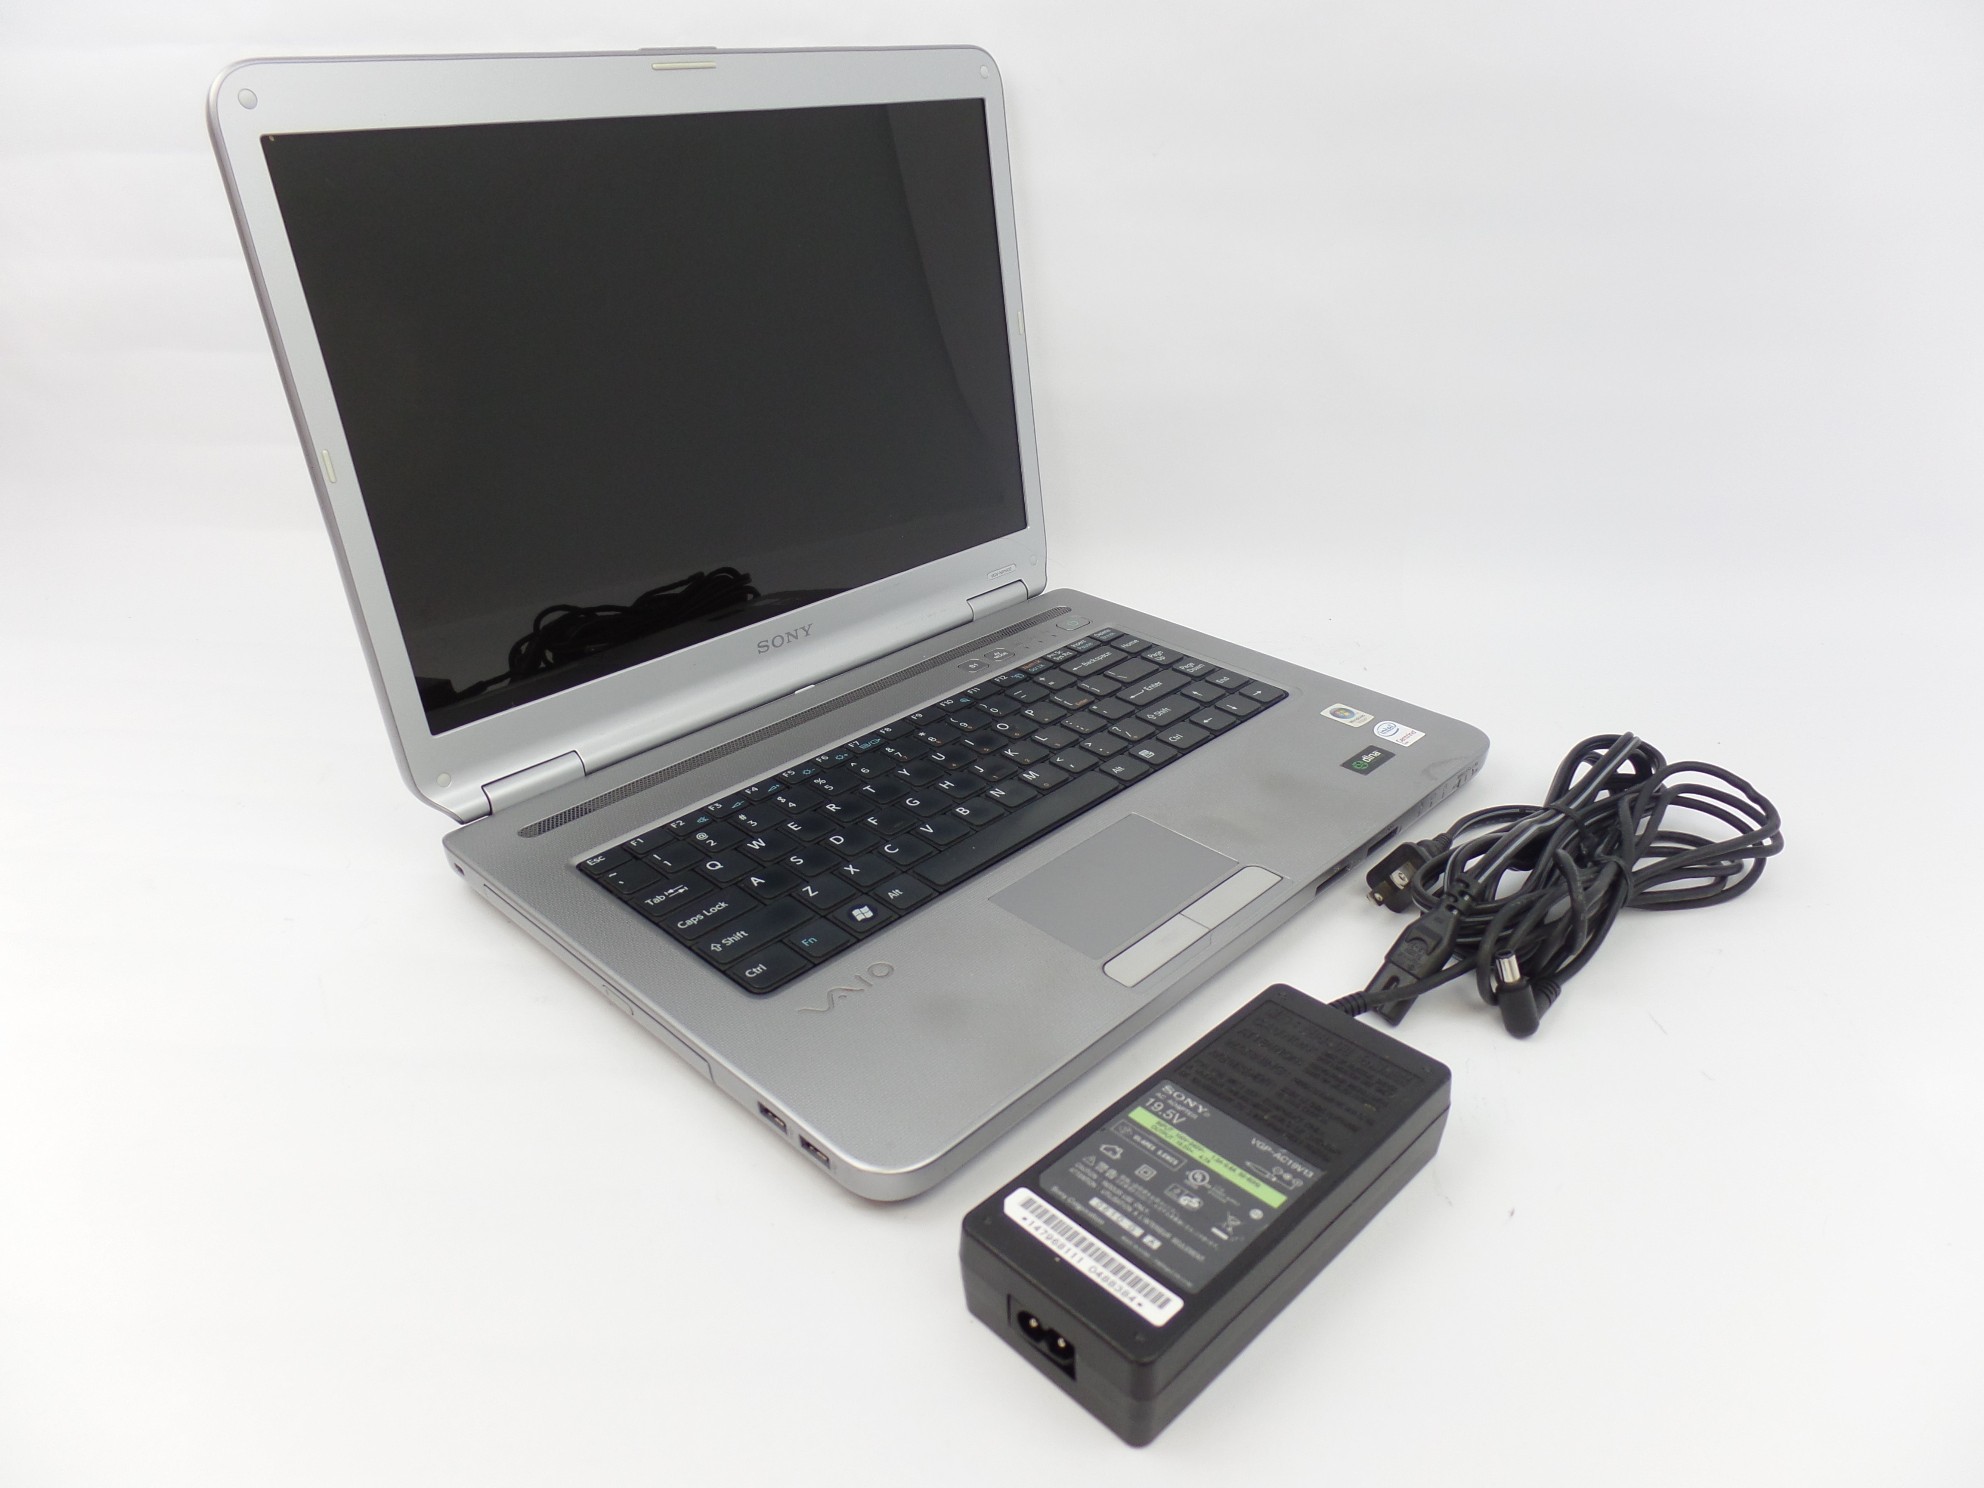 Sony VAIO VGN-NR160E 15.4" WXGA Core 2 Duo 1.5GHz 3GB 160GB W7P PCG-7Z1L Laptop 